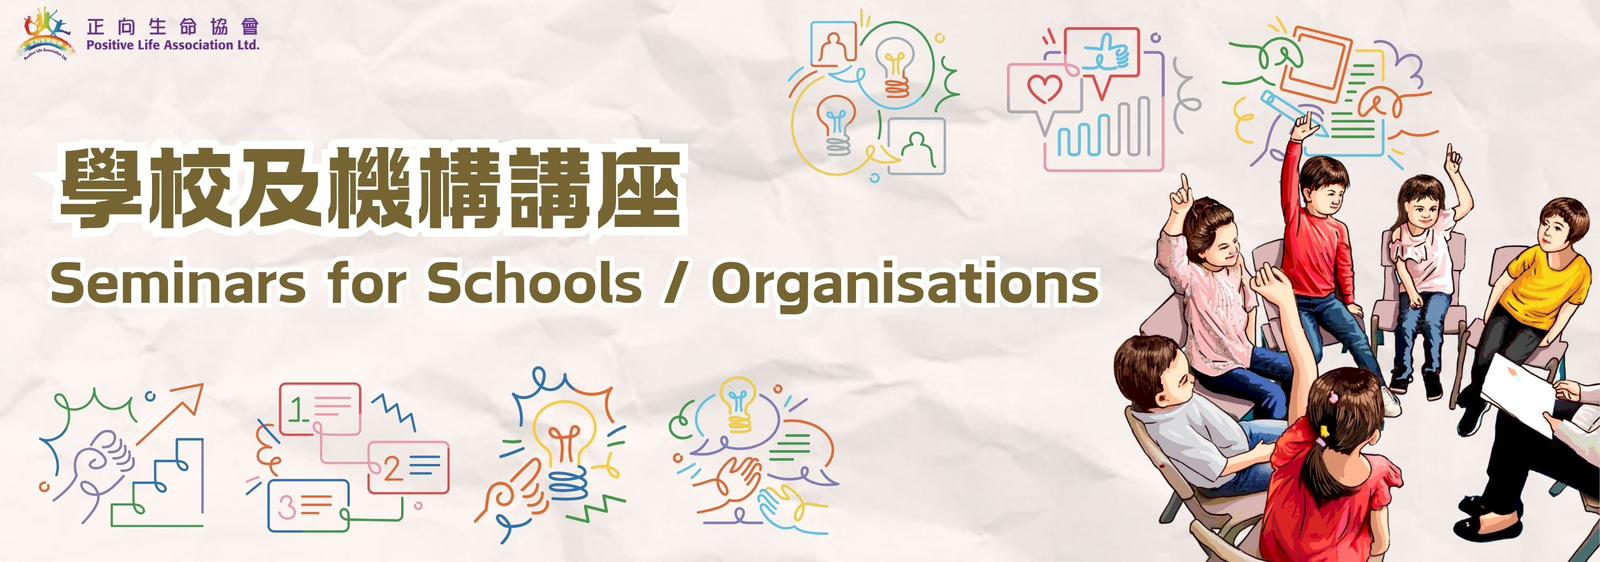 Seminars for Schools / Organizations